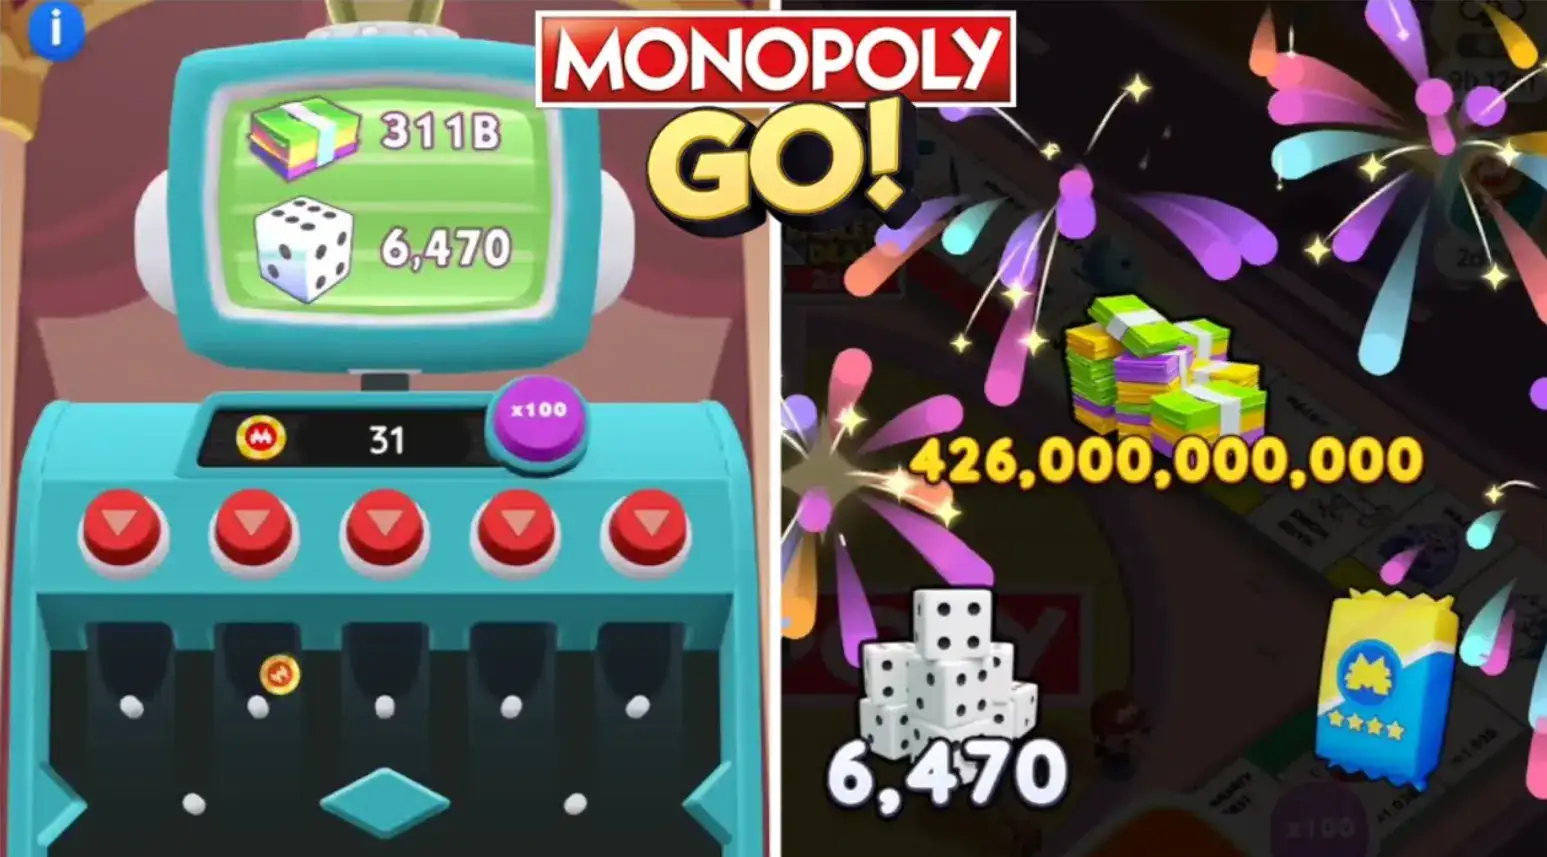 monopoly go prize drop rewards and milestones